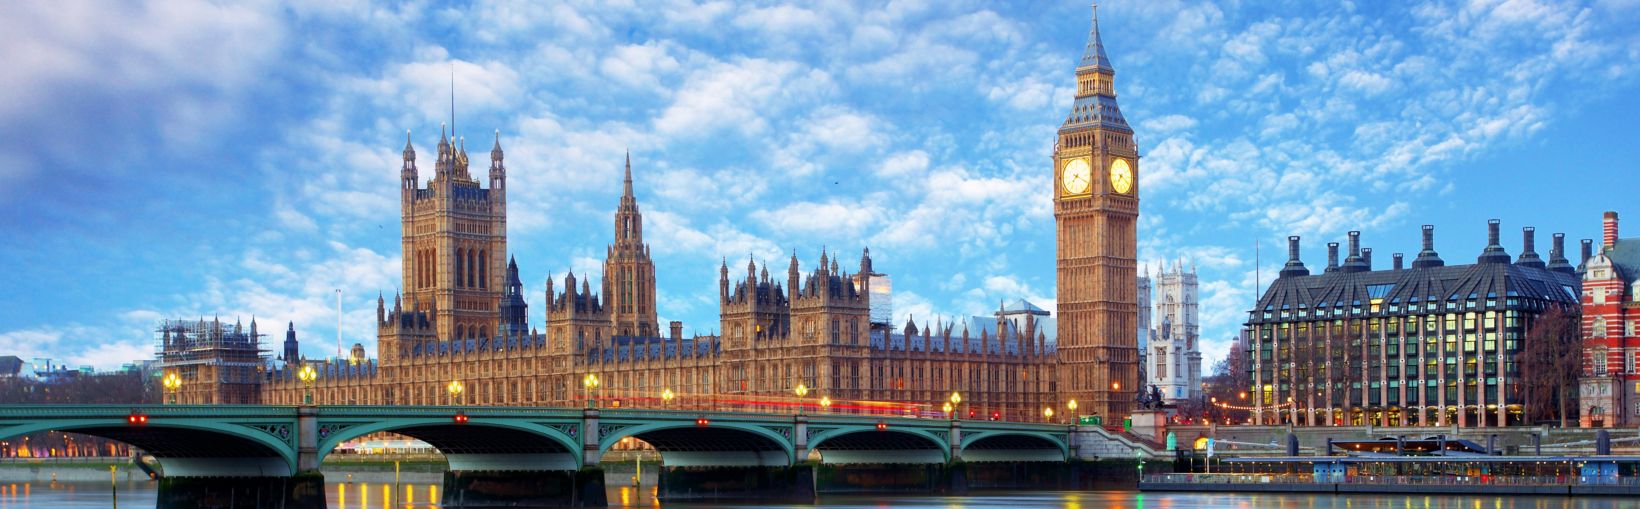 Big Ben en de Houses of Parliament, Londen